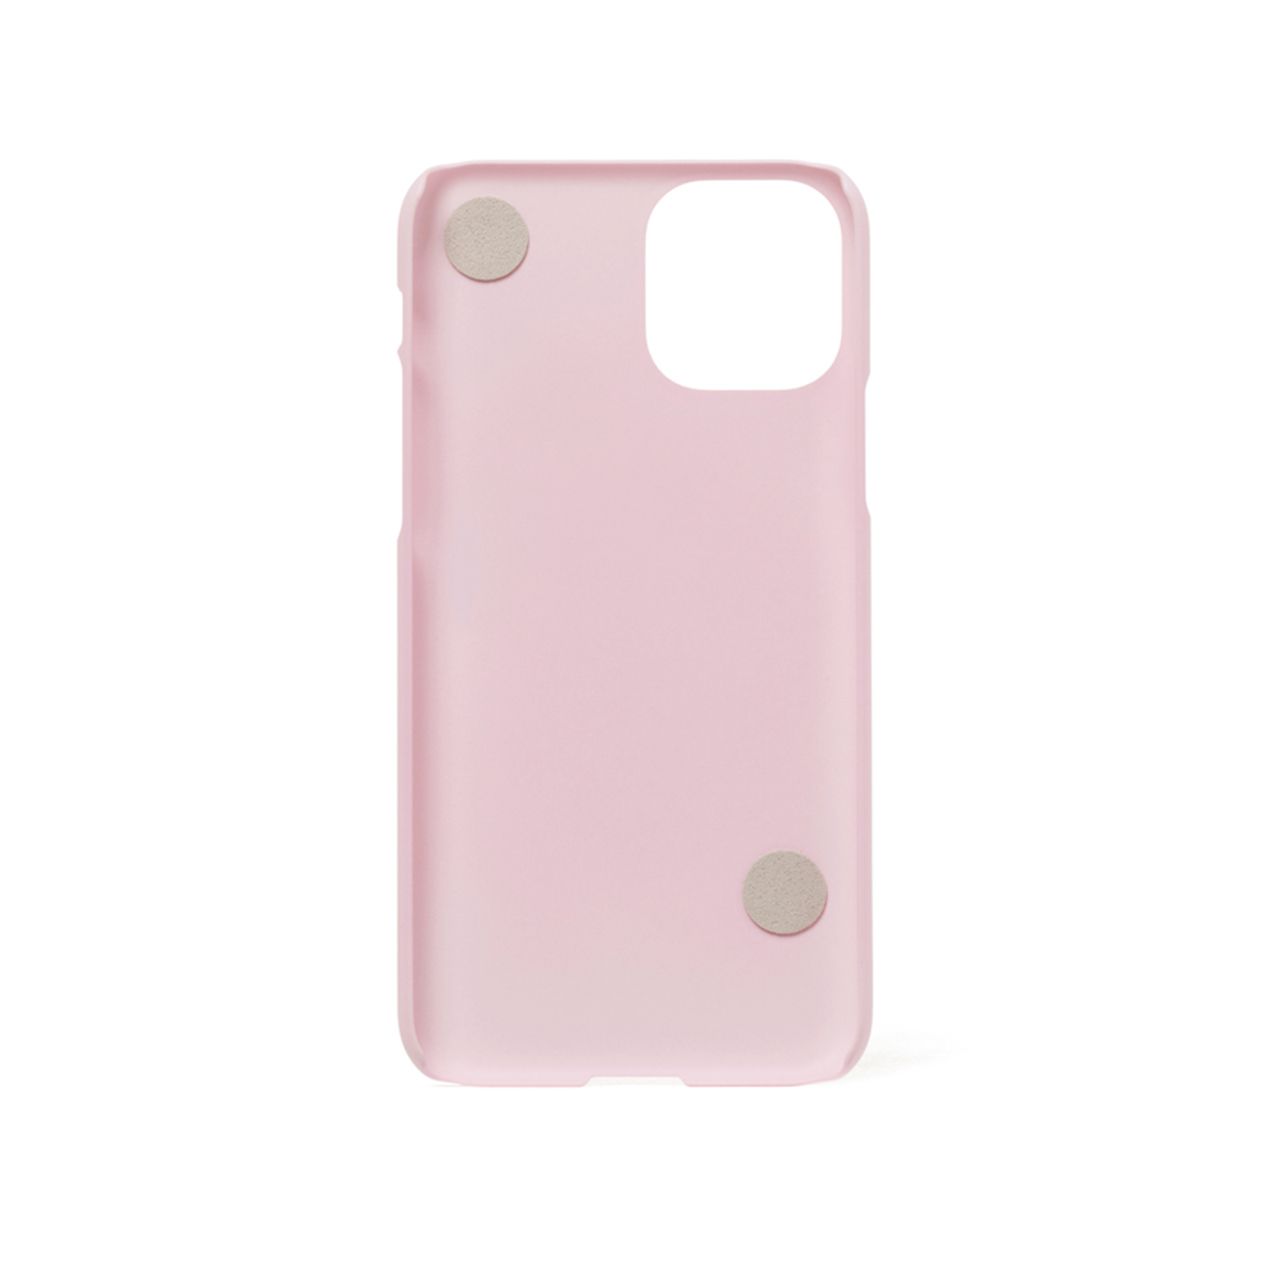  Ốp kèm dây đeo tay - iPhone 11 Pro (màu hồng) (Lovely Apeach) 